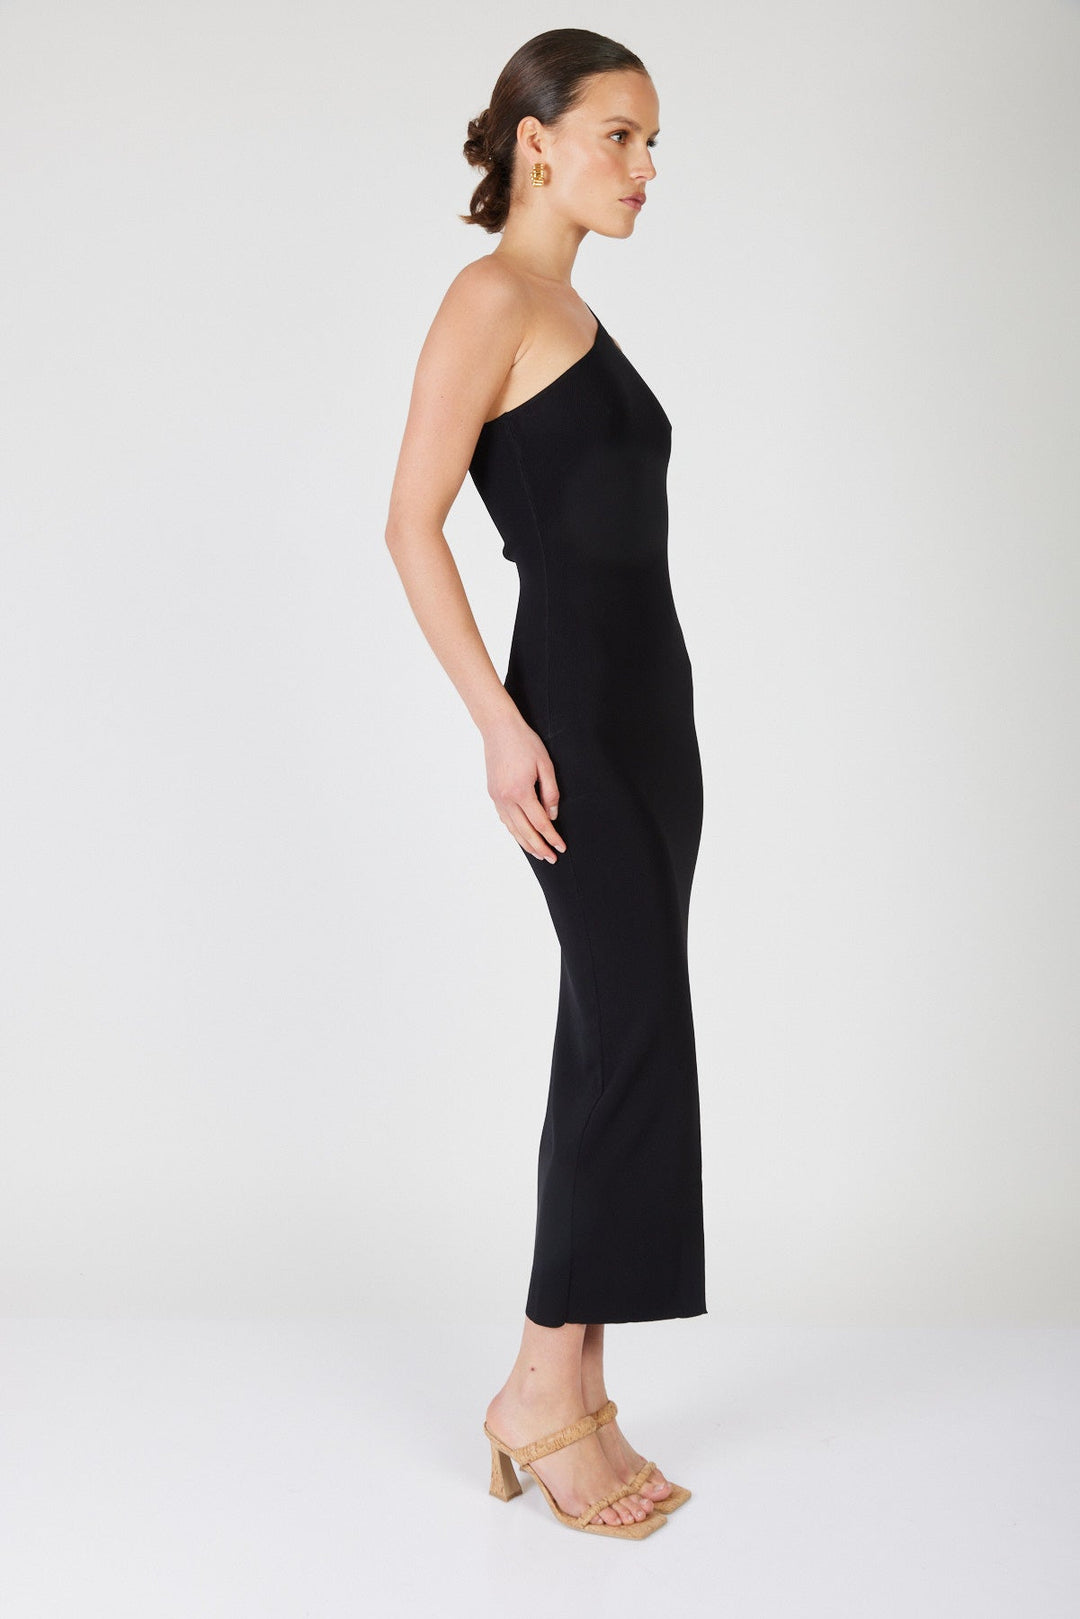 שמלת מקסי וואן שולדר פדריקה בצבע שחור - Mother Ofall